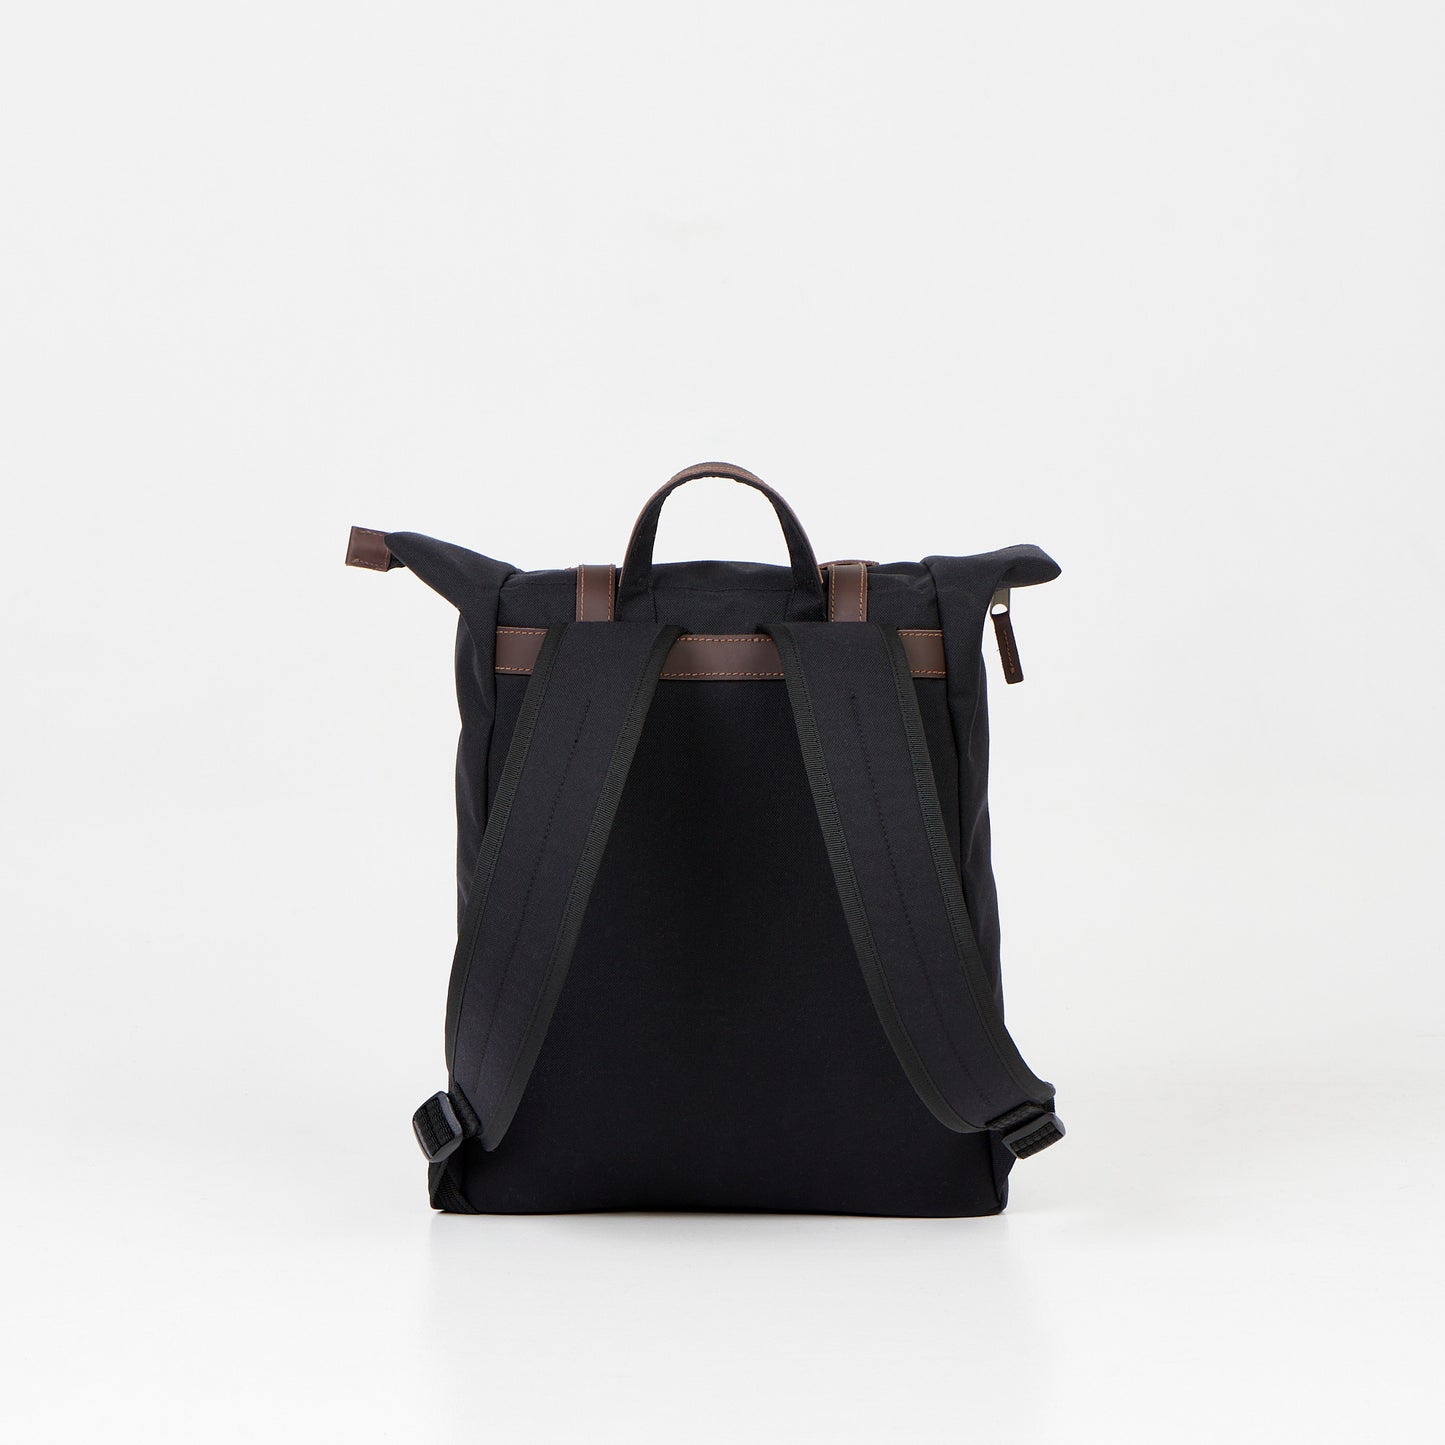 Zip Backpack NOEL - Black